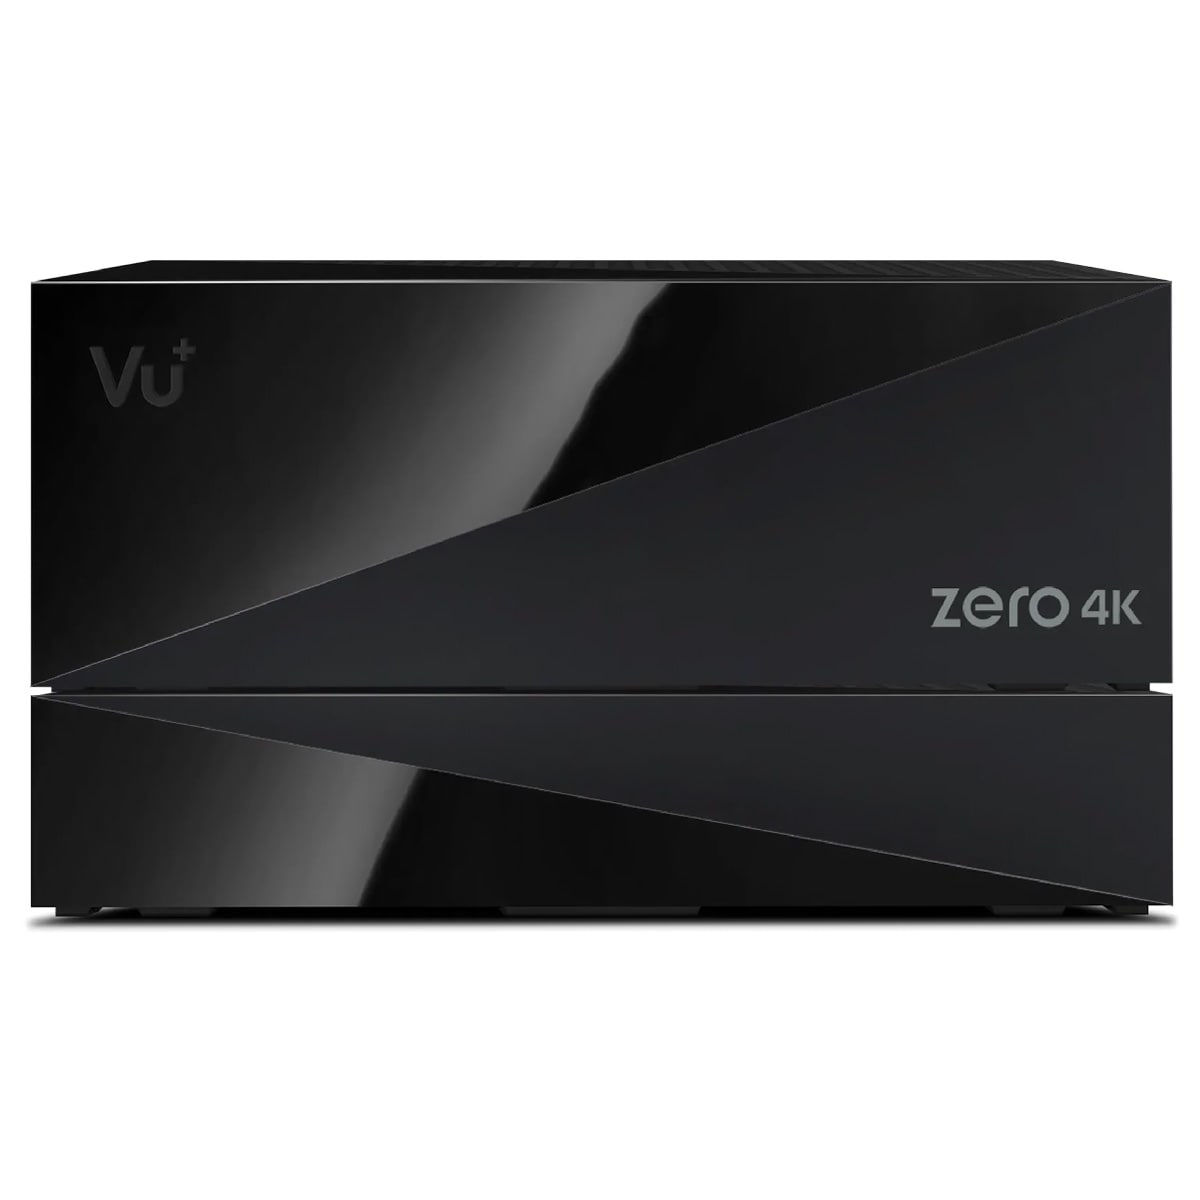 4K 500GB MS (Schwarz) DVB-S2X Receiver Zero Sat inkl. 4K PVR-Kit VU+